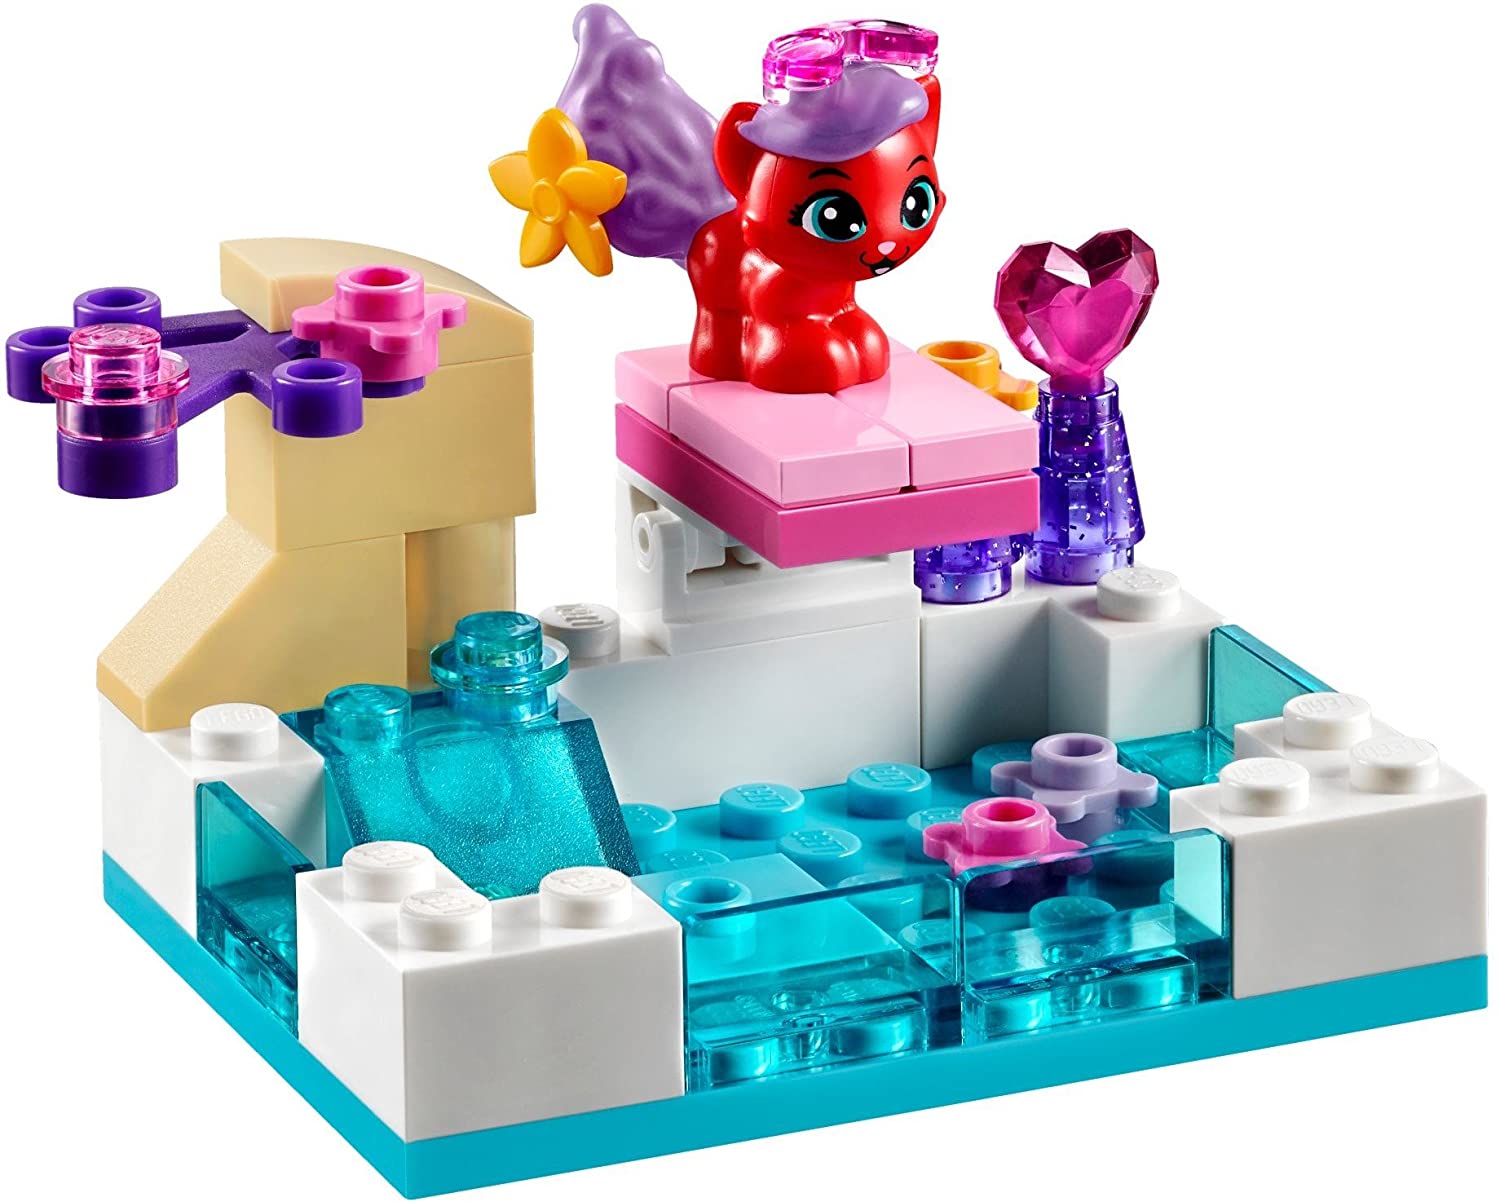 LEGO 樂高 迪士尼公主系列 皇家寵物 訓練玩具 41069